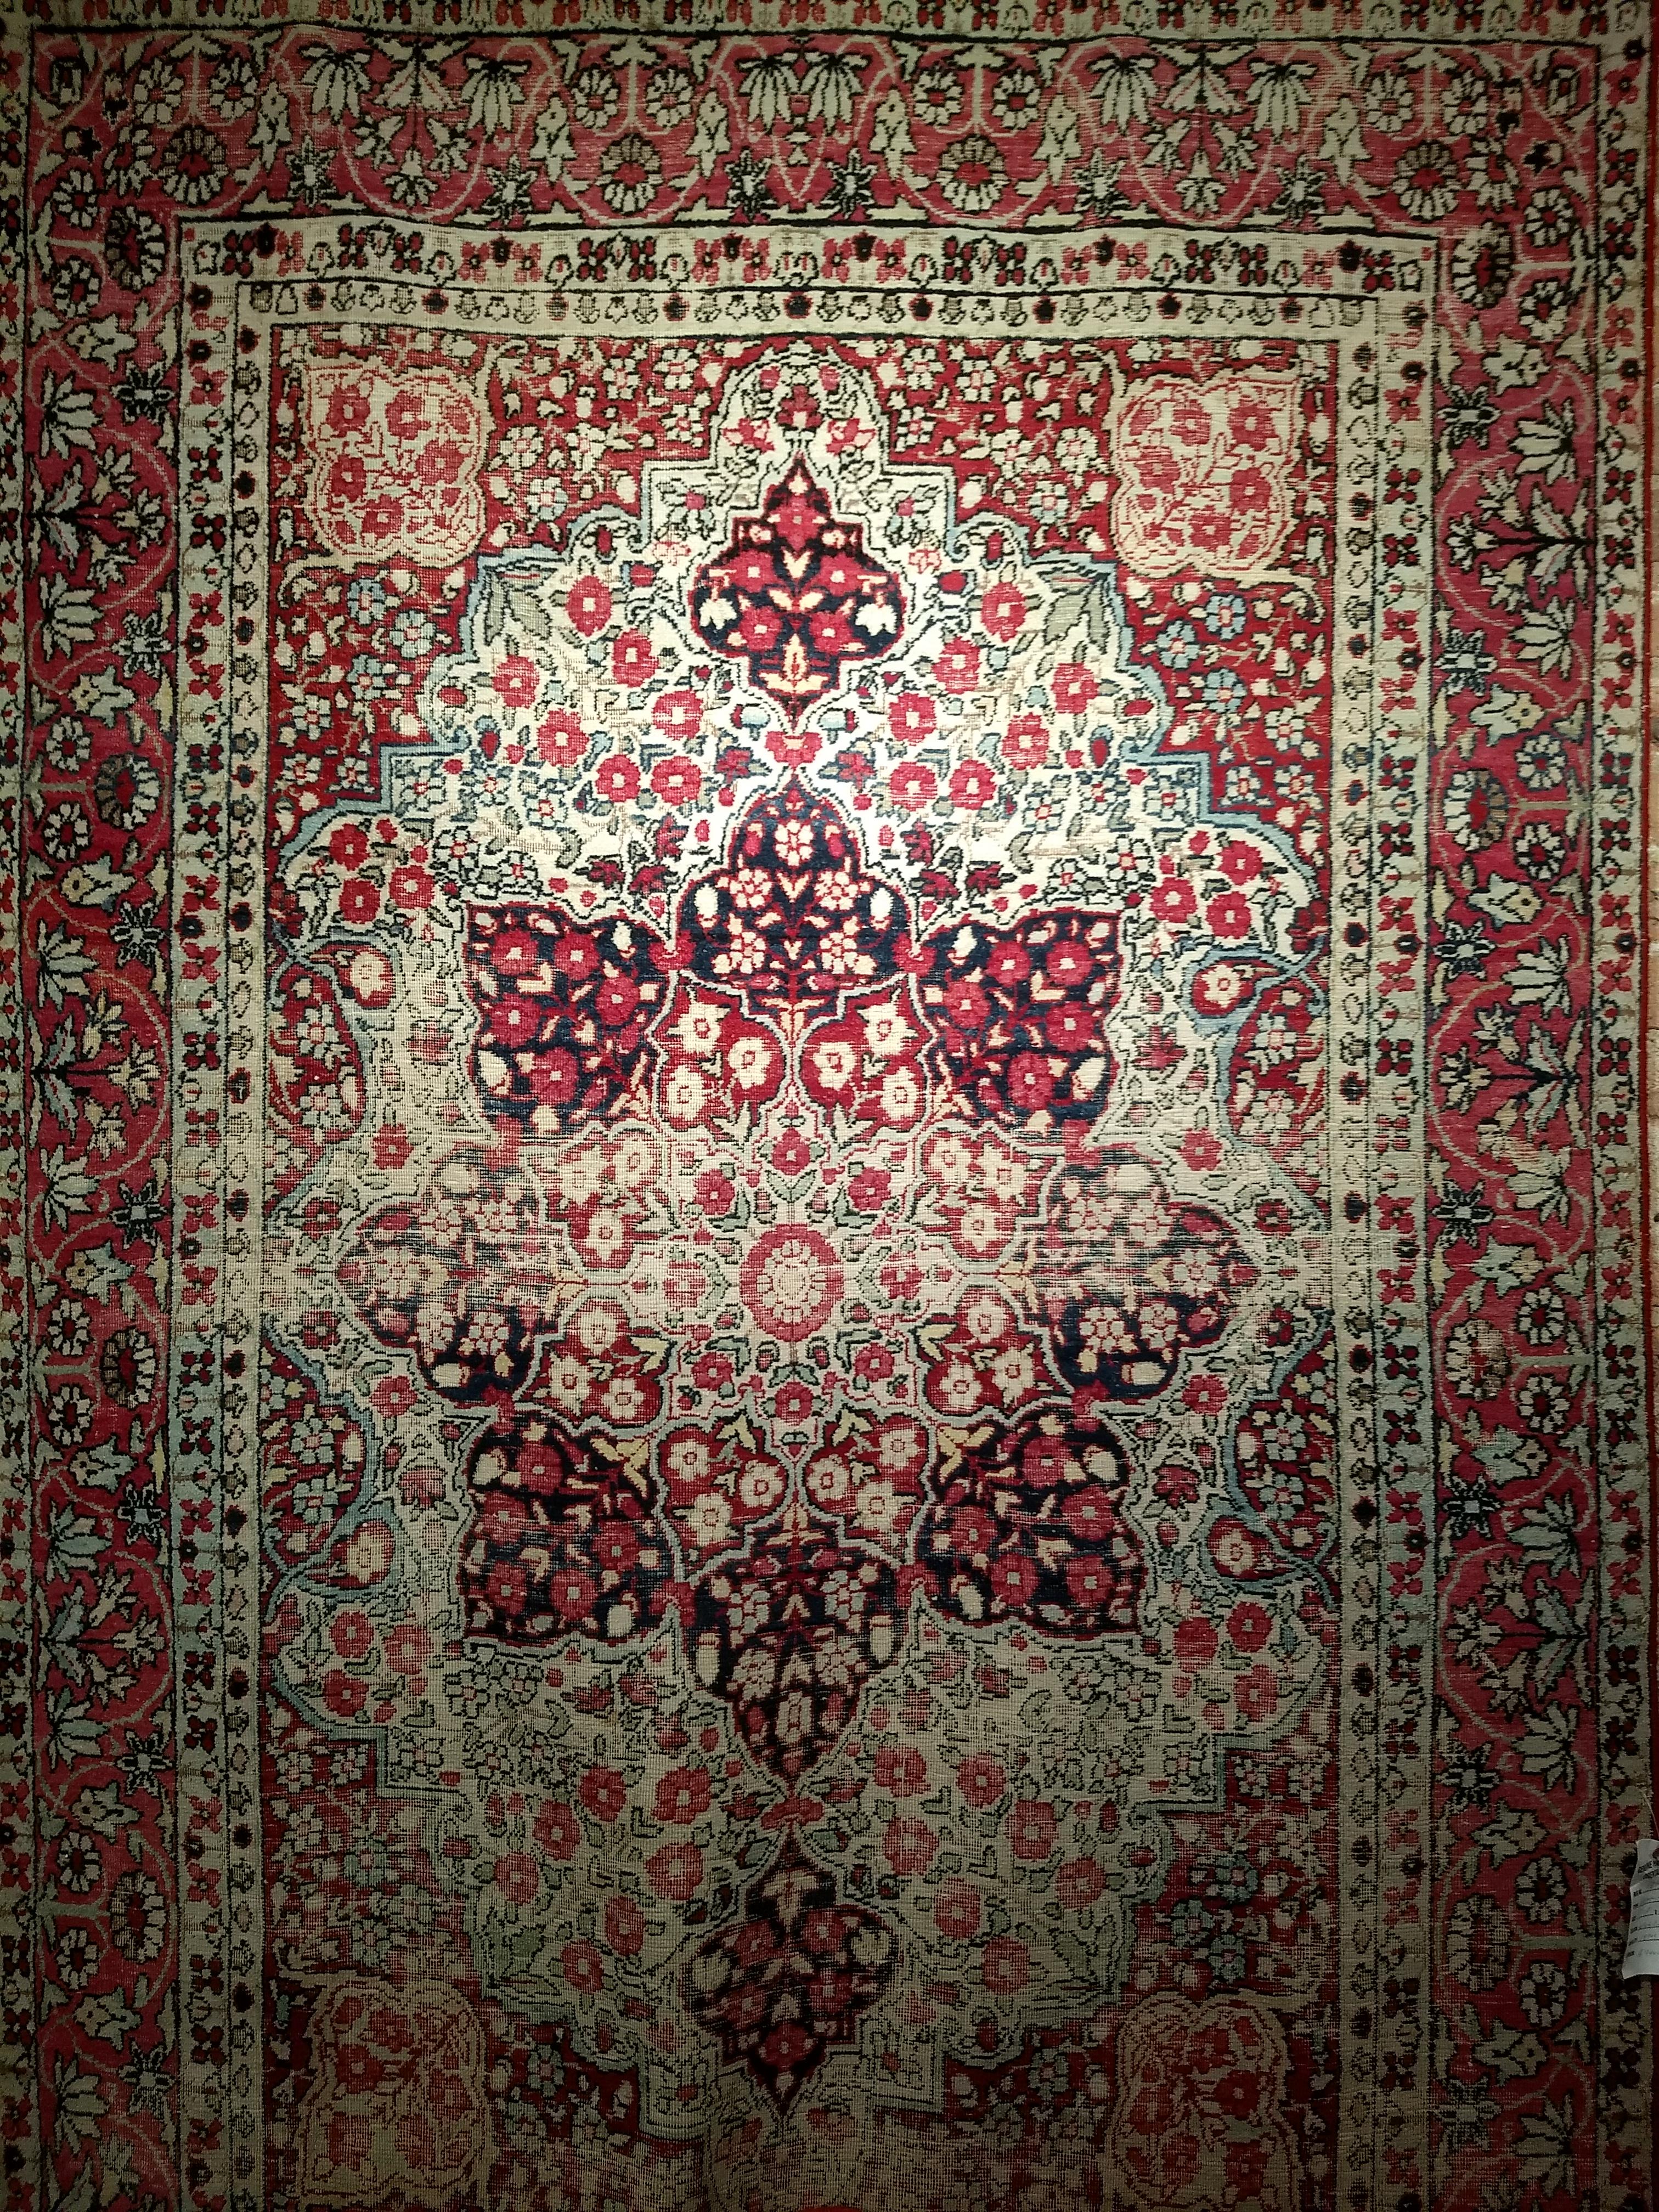 Ein schöner Lavar-Teppich aus Kerman aus den späten 1800er Jahren. Das Hauptfeld ist elfenbeinfarben, die Eckzwickel sind rot und die Umrandung ist rosarot. Der Teppich hat ein florales Muster in Rot, Hellblau und Cremefarben. Die Umrandung ist in